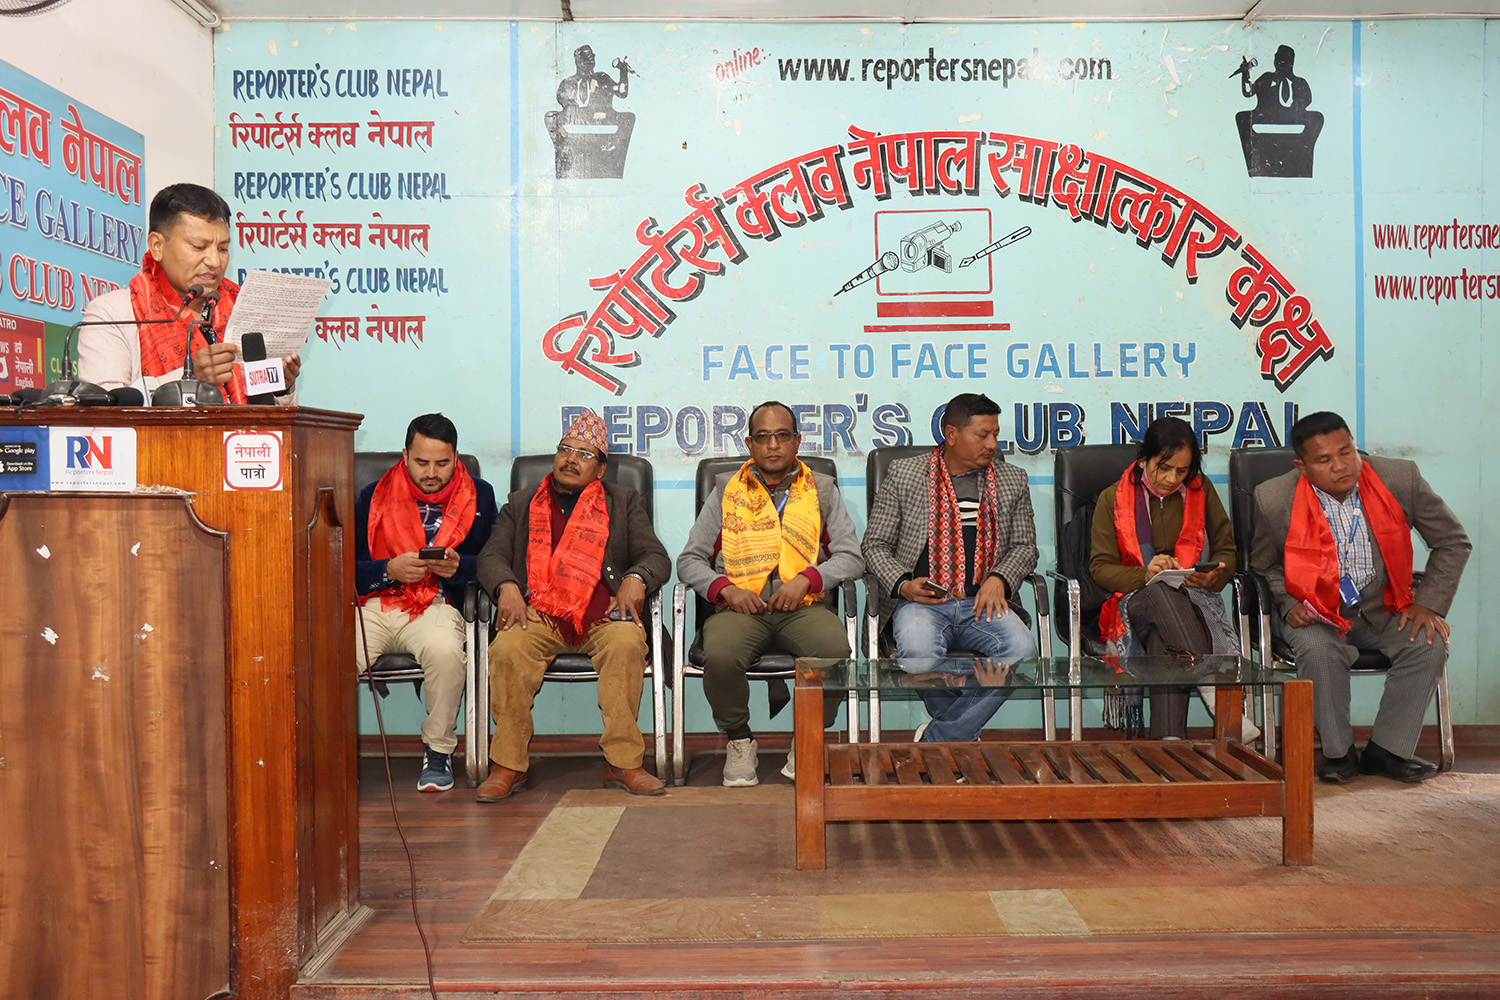 राज्यले ट्याक्सी व्यवसायीलाई बन्धक बनाएको भन्दै  नेपाल मिटर ट्याक्सी व्यवसायी चालक समाजले १६ बुँदे मागहरु सार्वजनिक